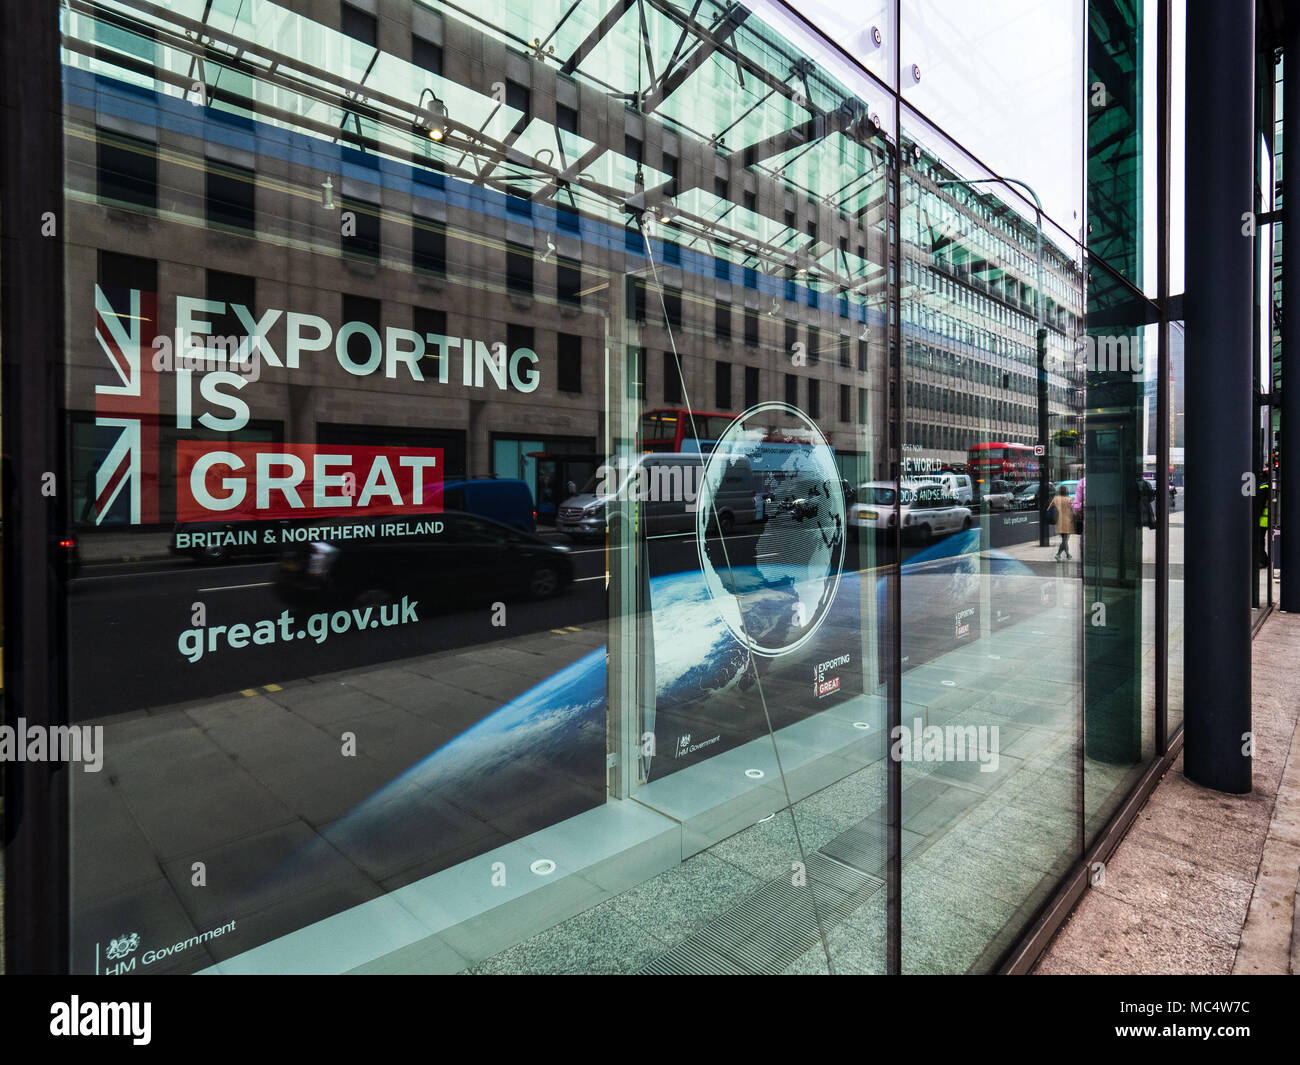 Ministerium für Wirtschaft, Energie und industrielle Strategie, London - Export ist große Kampagne Anzeige im Fenster der Abteilung Büros Stockfoto